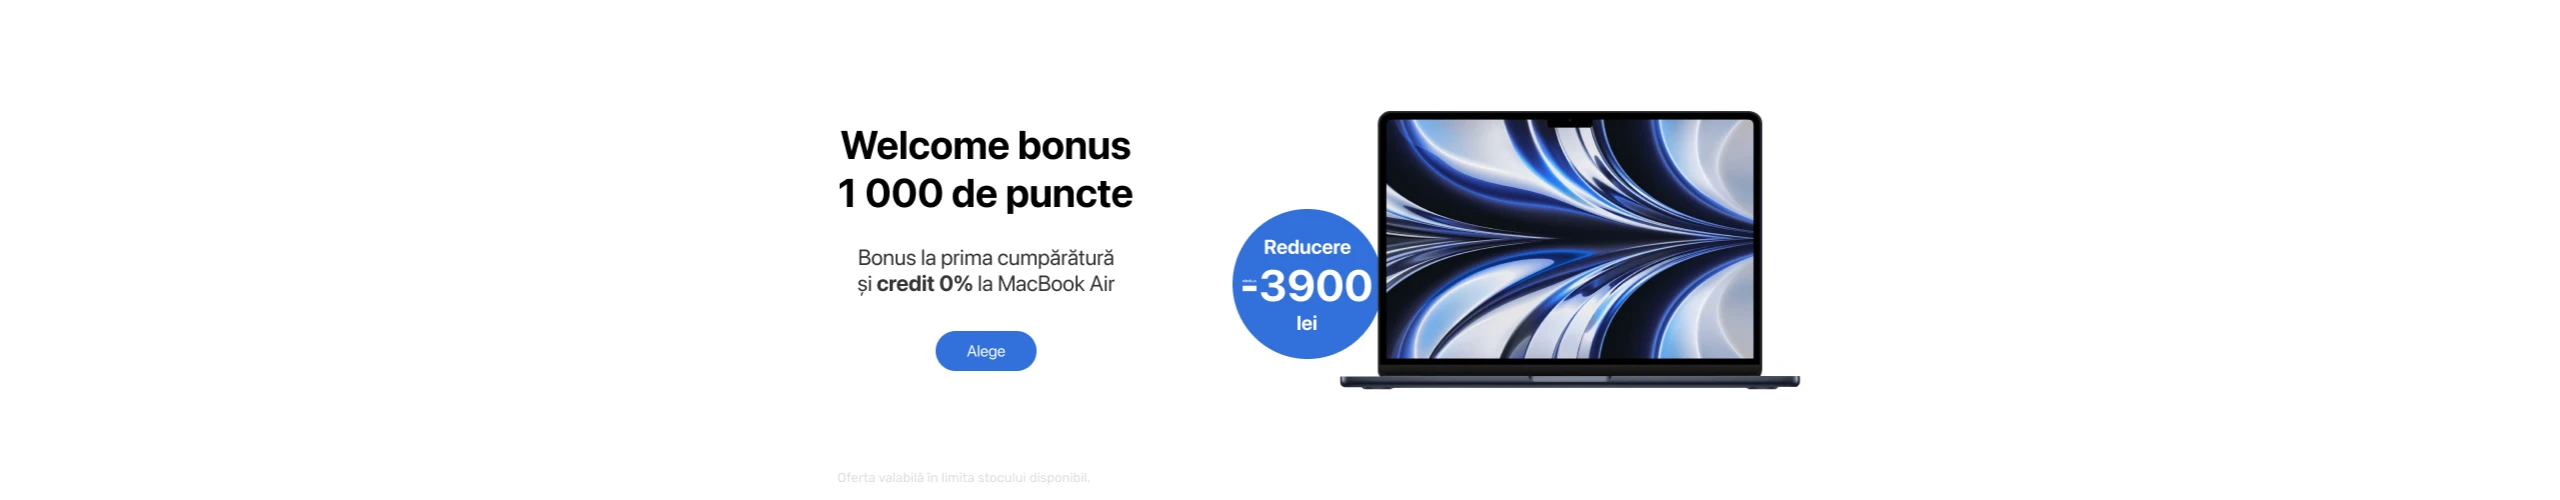 Reducere până la 3 900 lei la MacBook Air!